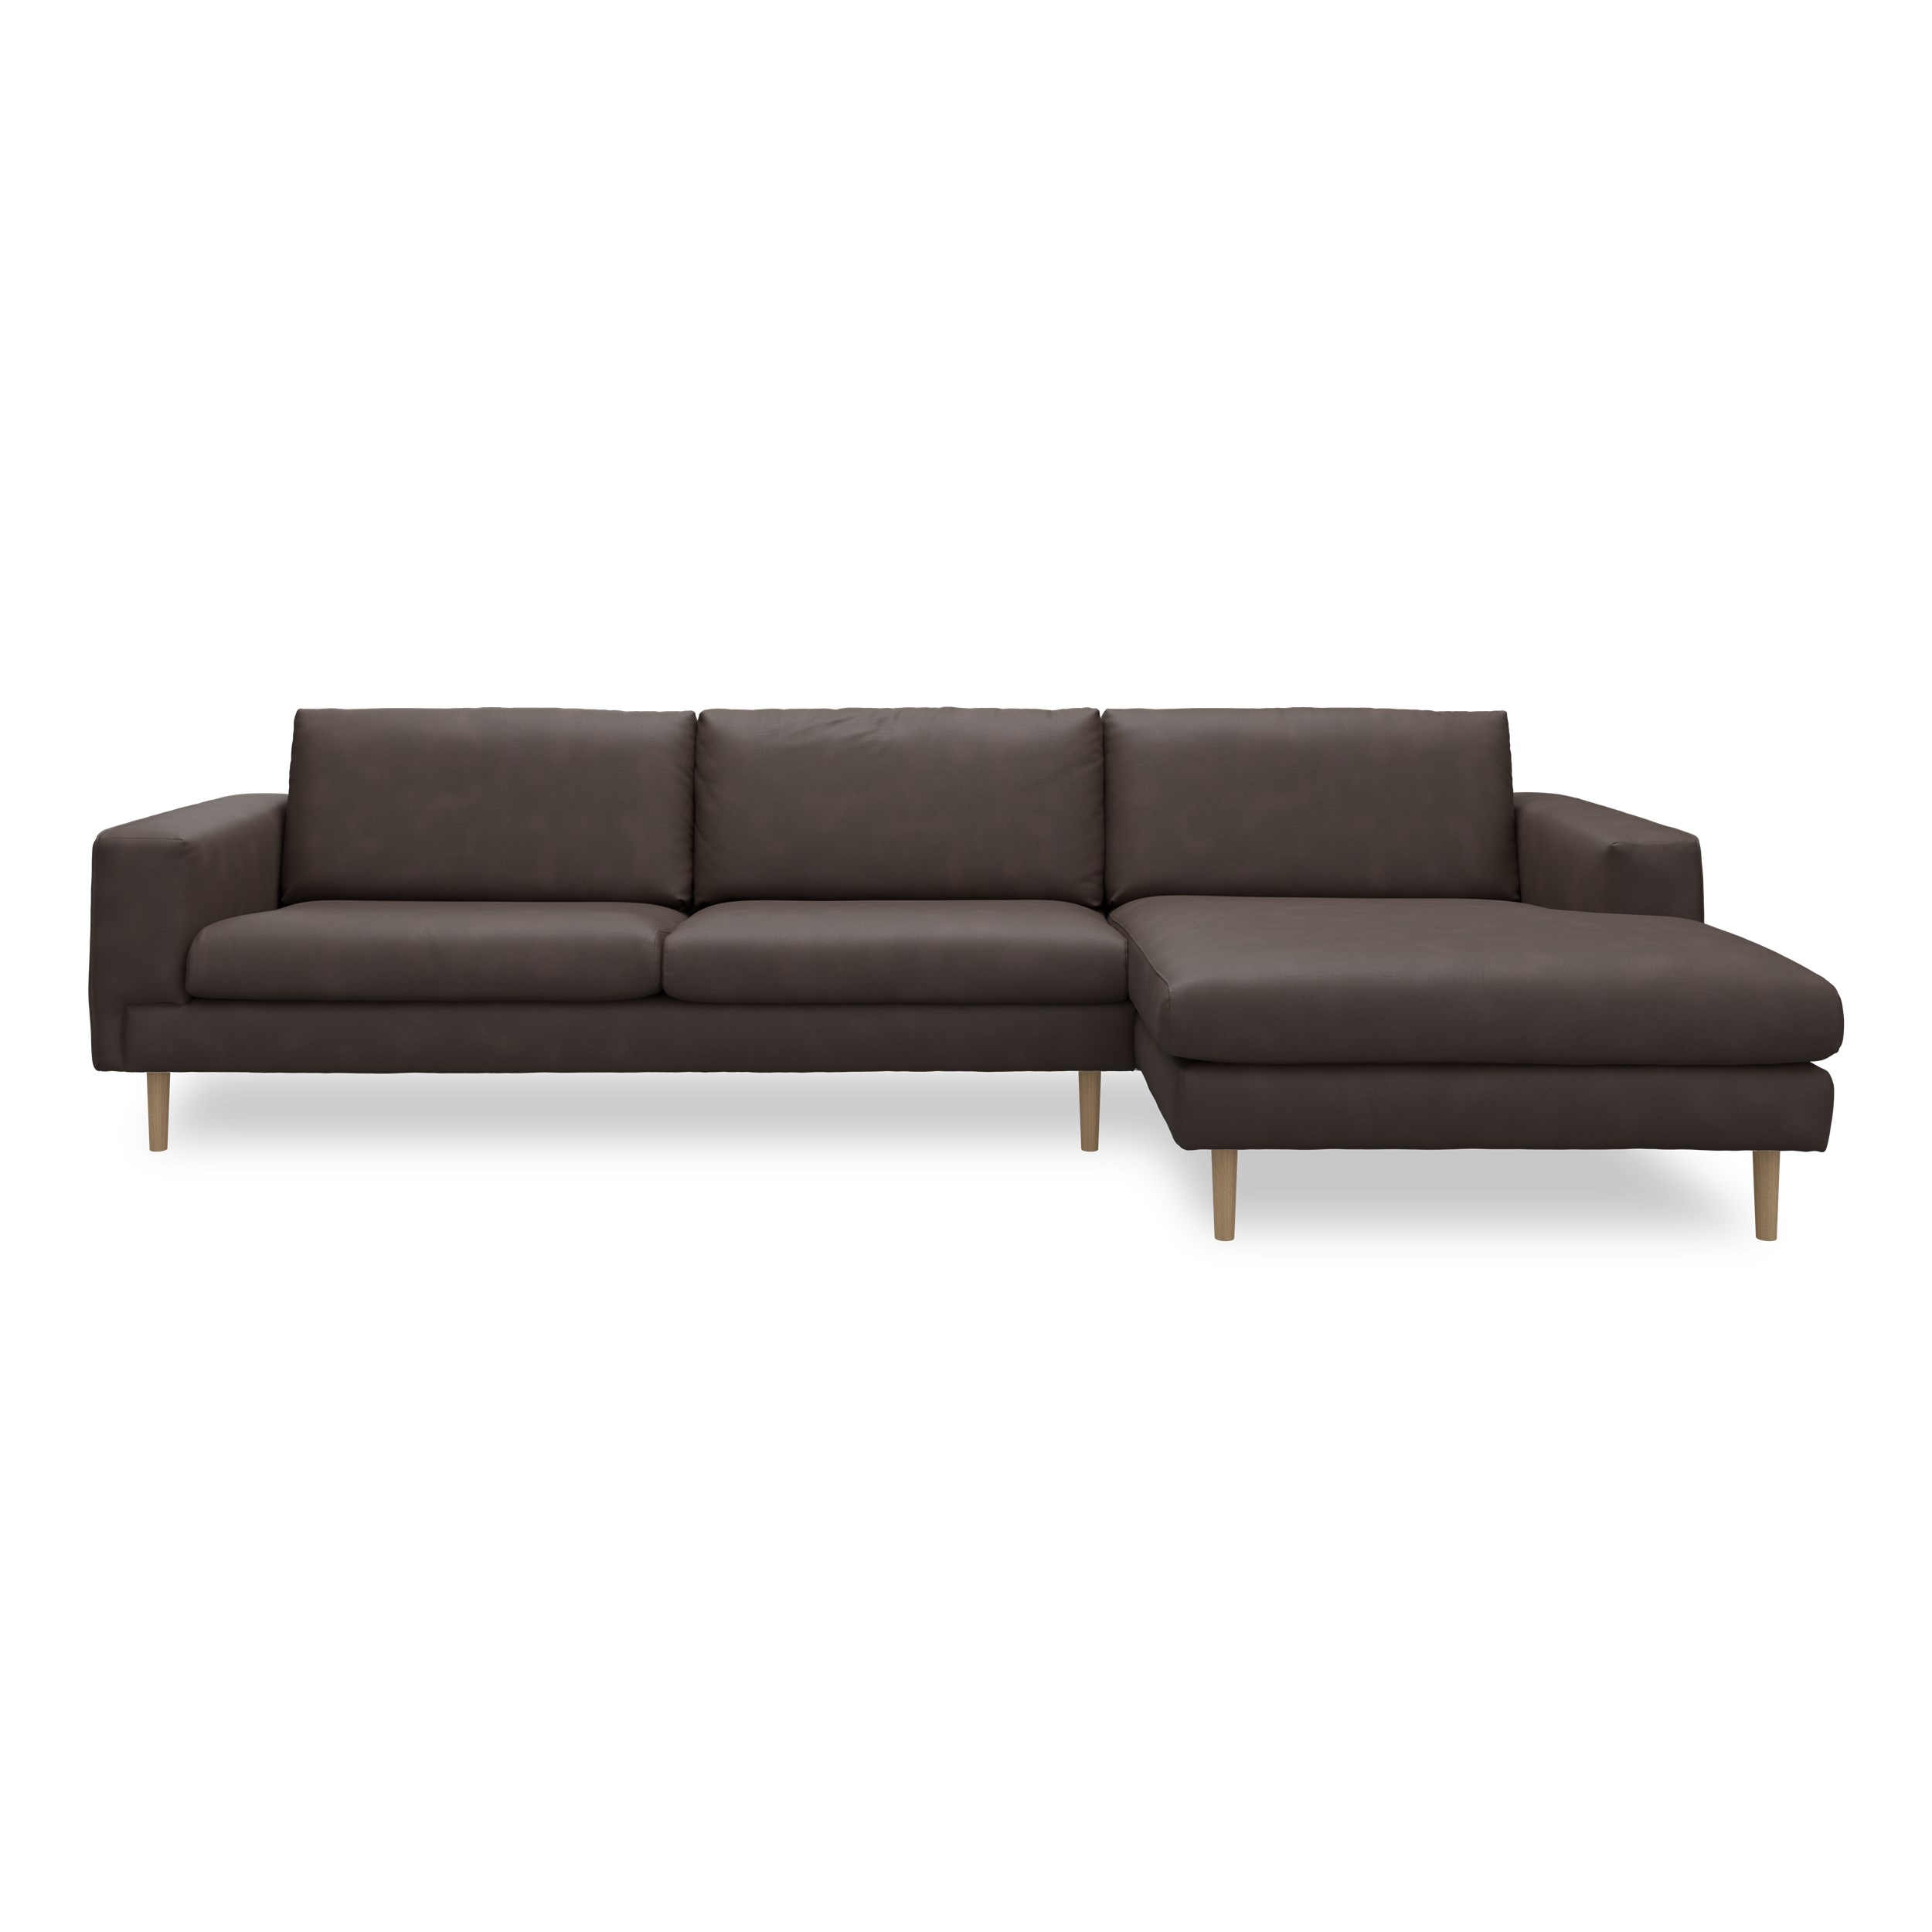 Nyland højrevendt sofa med chaiselong - Kentucky 1 earth bonded læder, Ben no. 141 i lakeret massiv eg og S: Pocketfjedre/koldskum R: Koldskum med fiberfyld